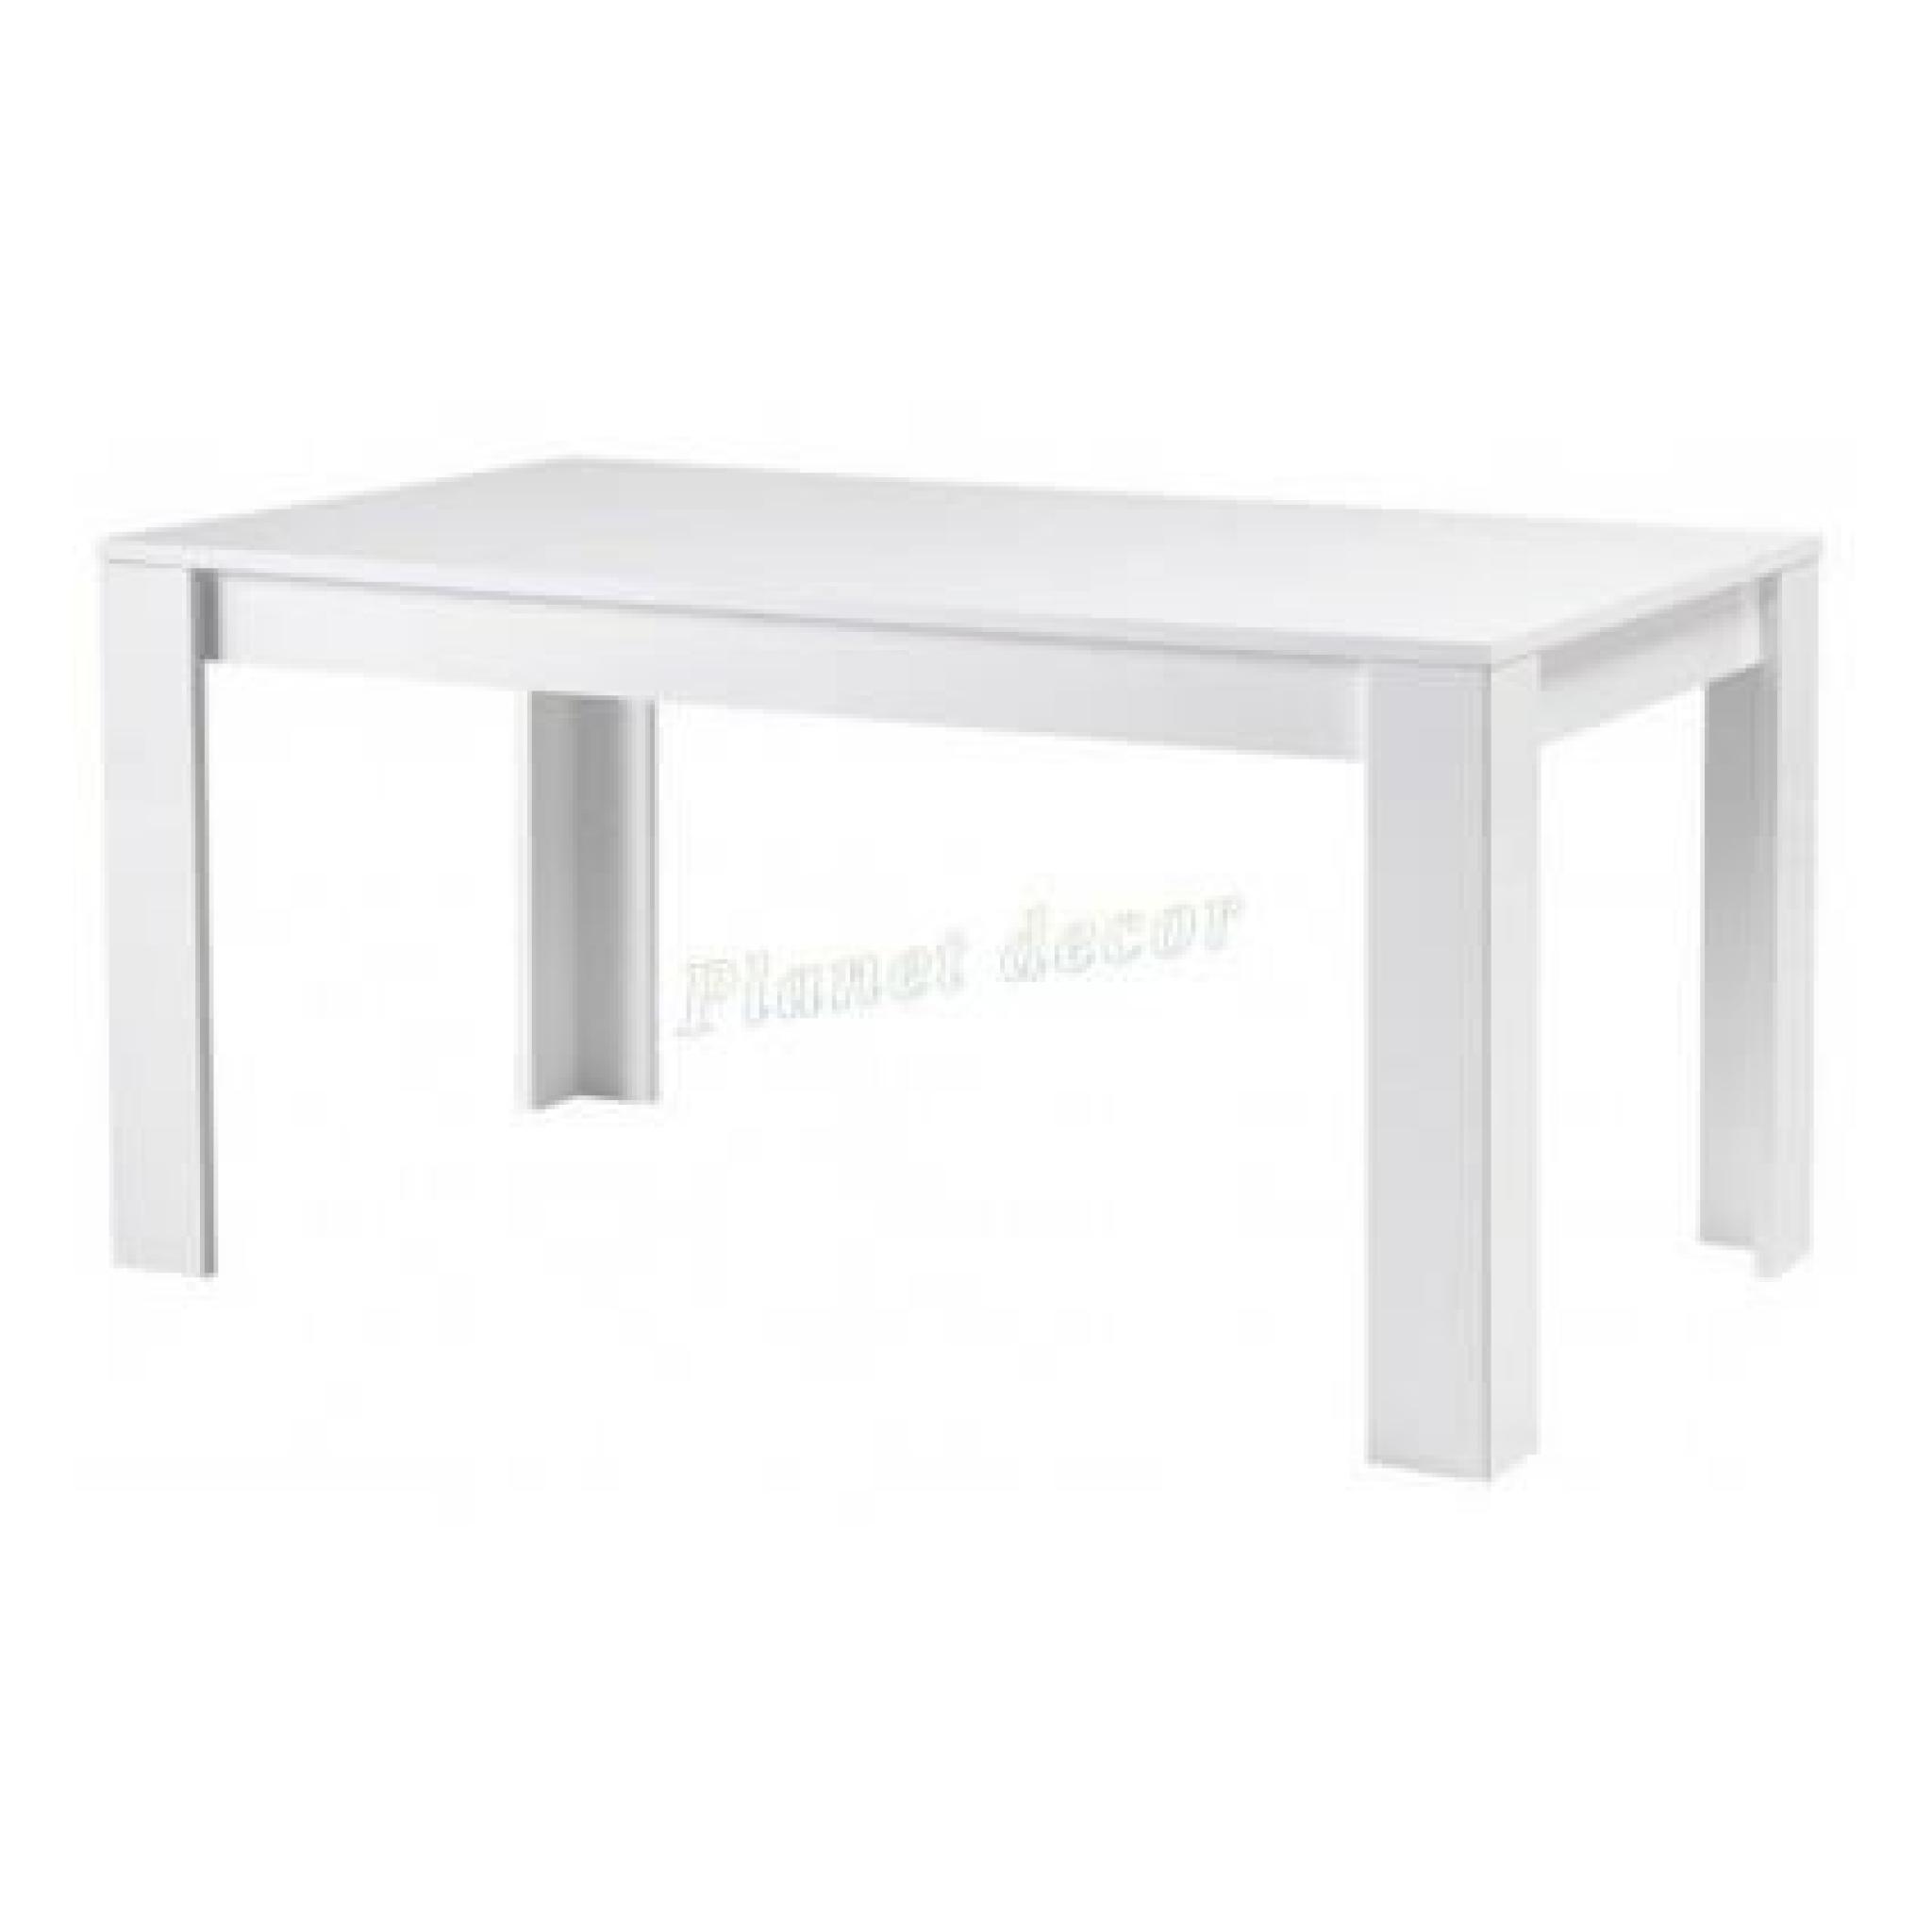 TABLE DE REPAS MODENA LAQUEE BLANC L190 cm(sans chaises)